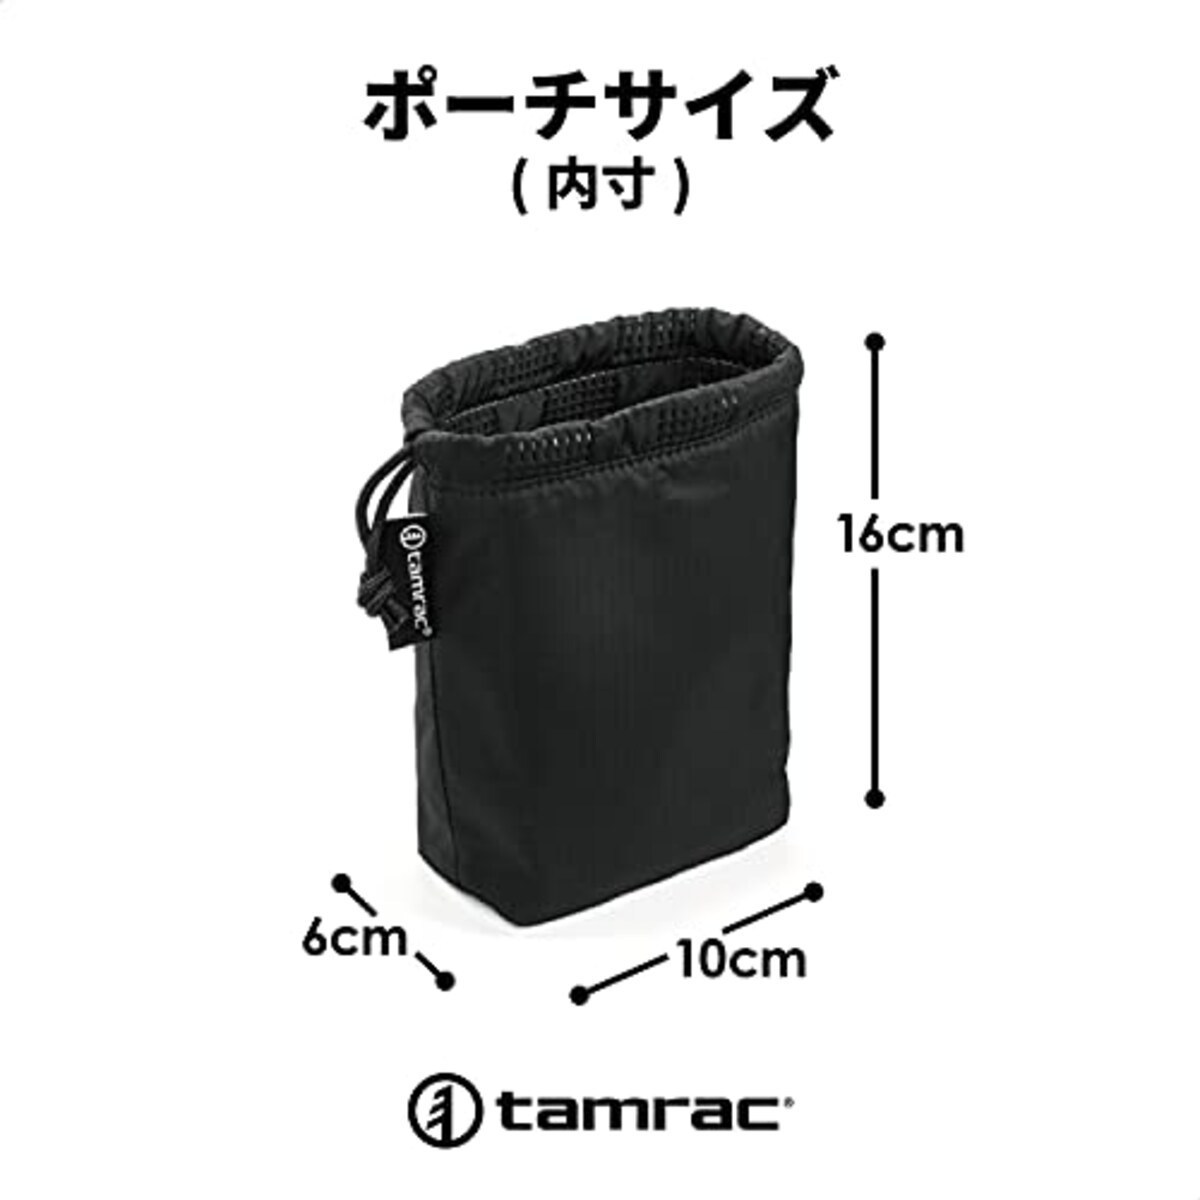  【国内正規品】タムラック カメラケース ゴブリンボディポーチ BK コンパクトデジタルカメラ収納 1.0L T1135-1919画像4 